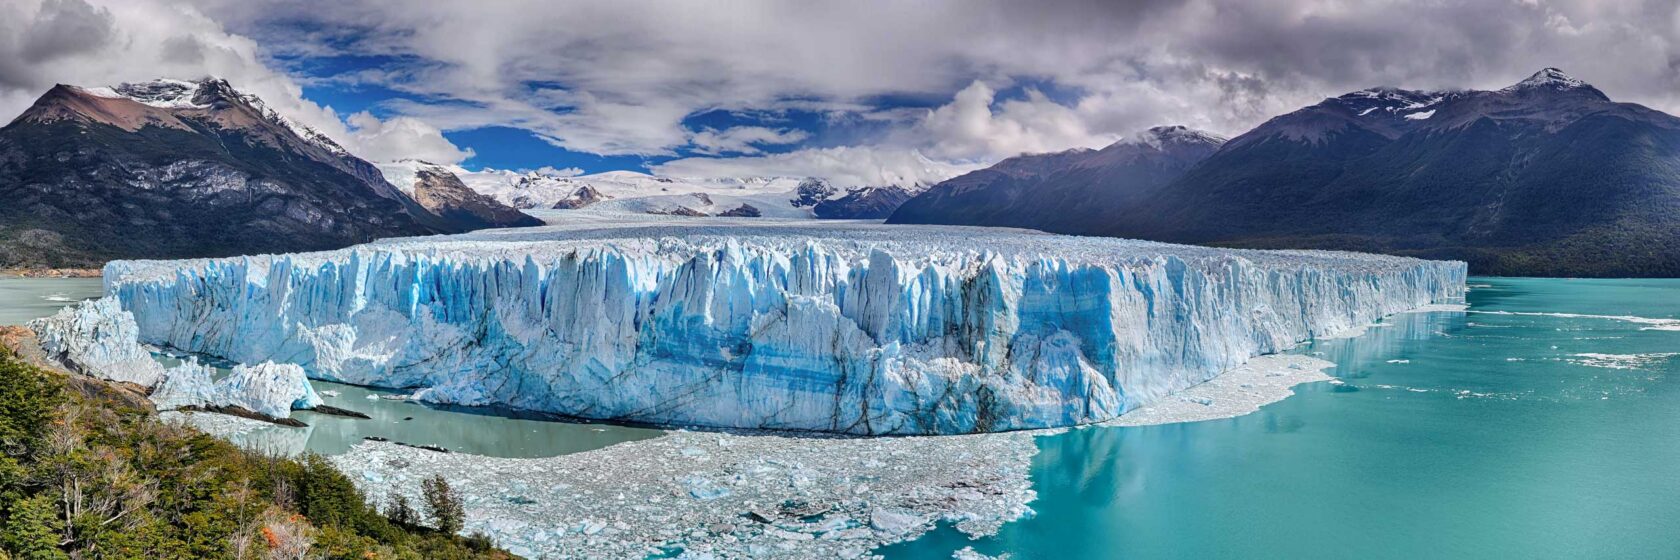 Perito Moreno Glacier at Los Glaciares National Park.